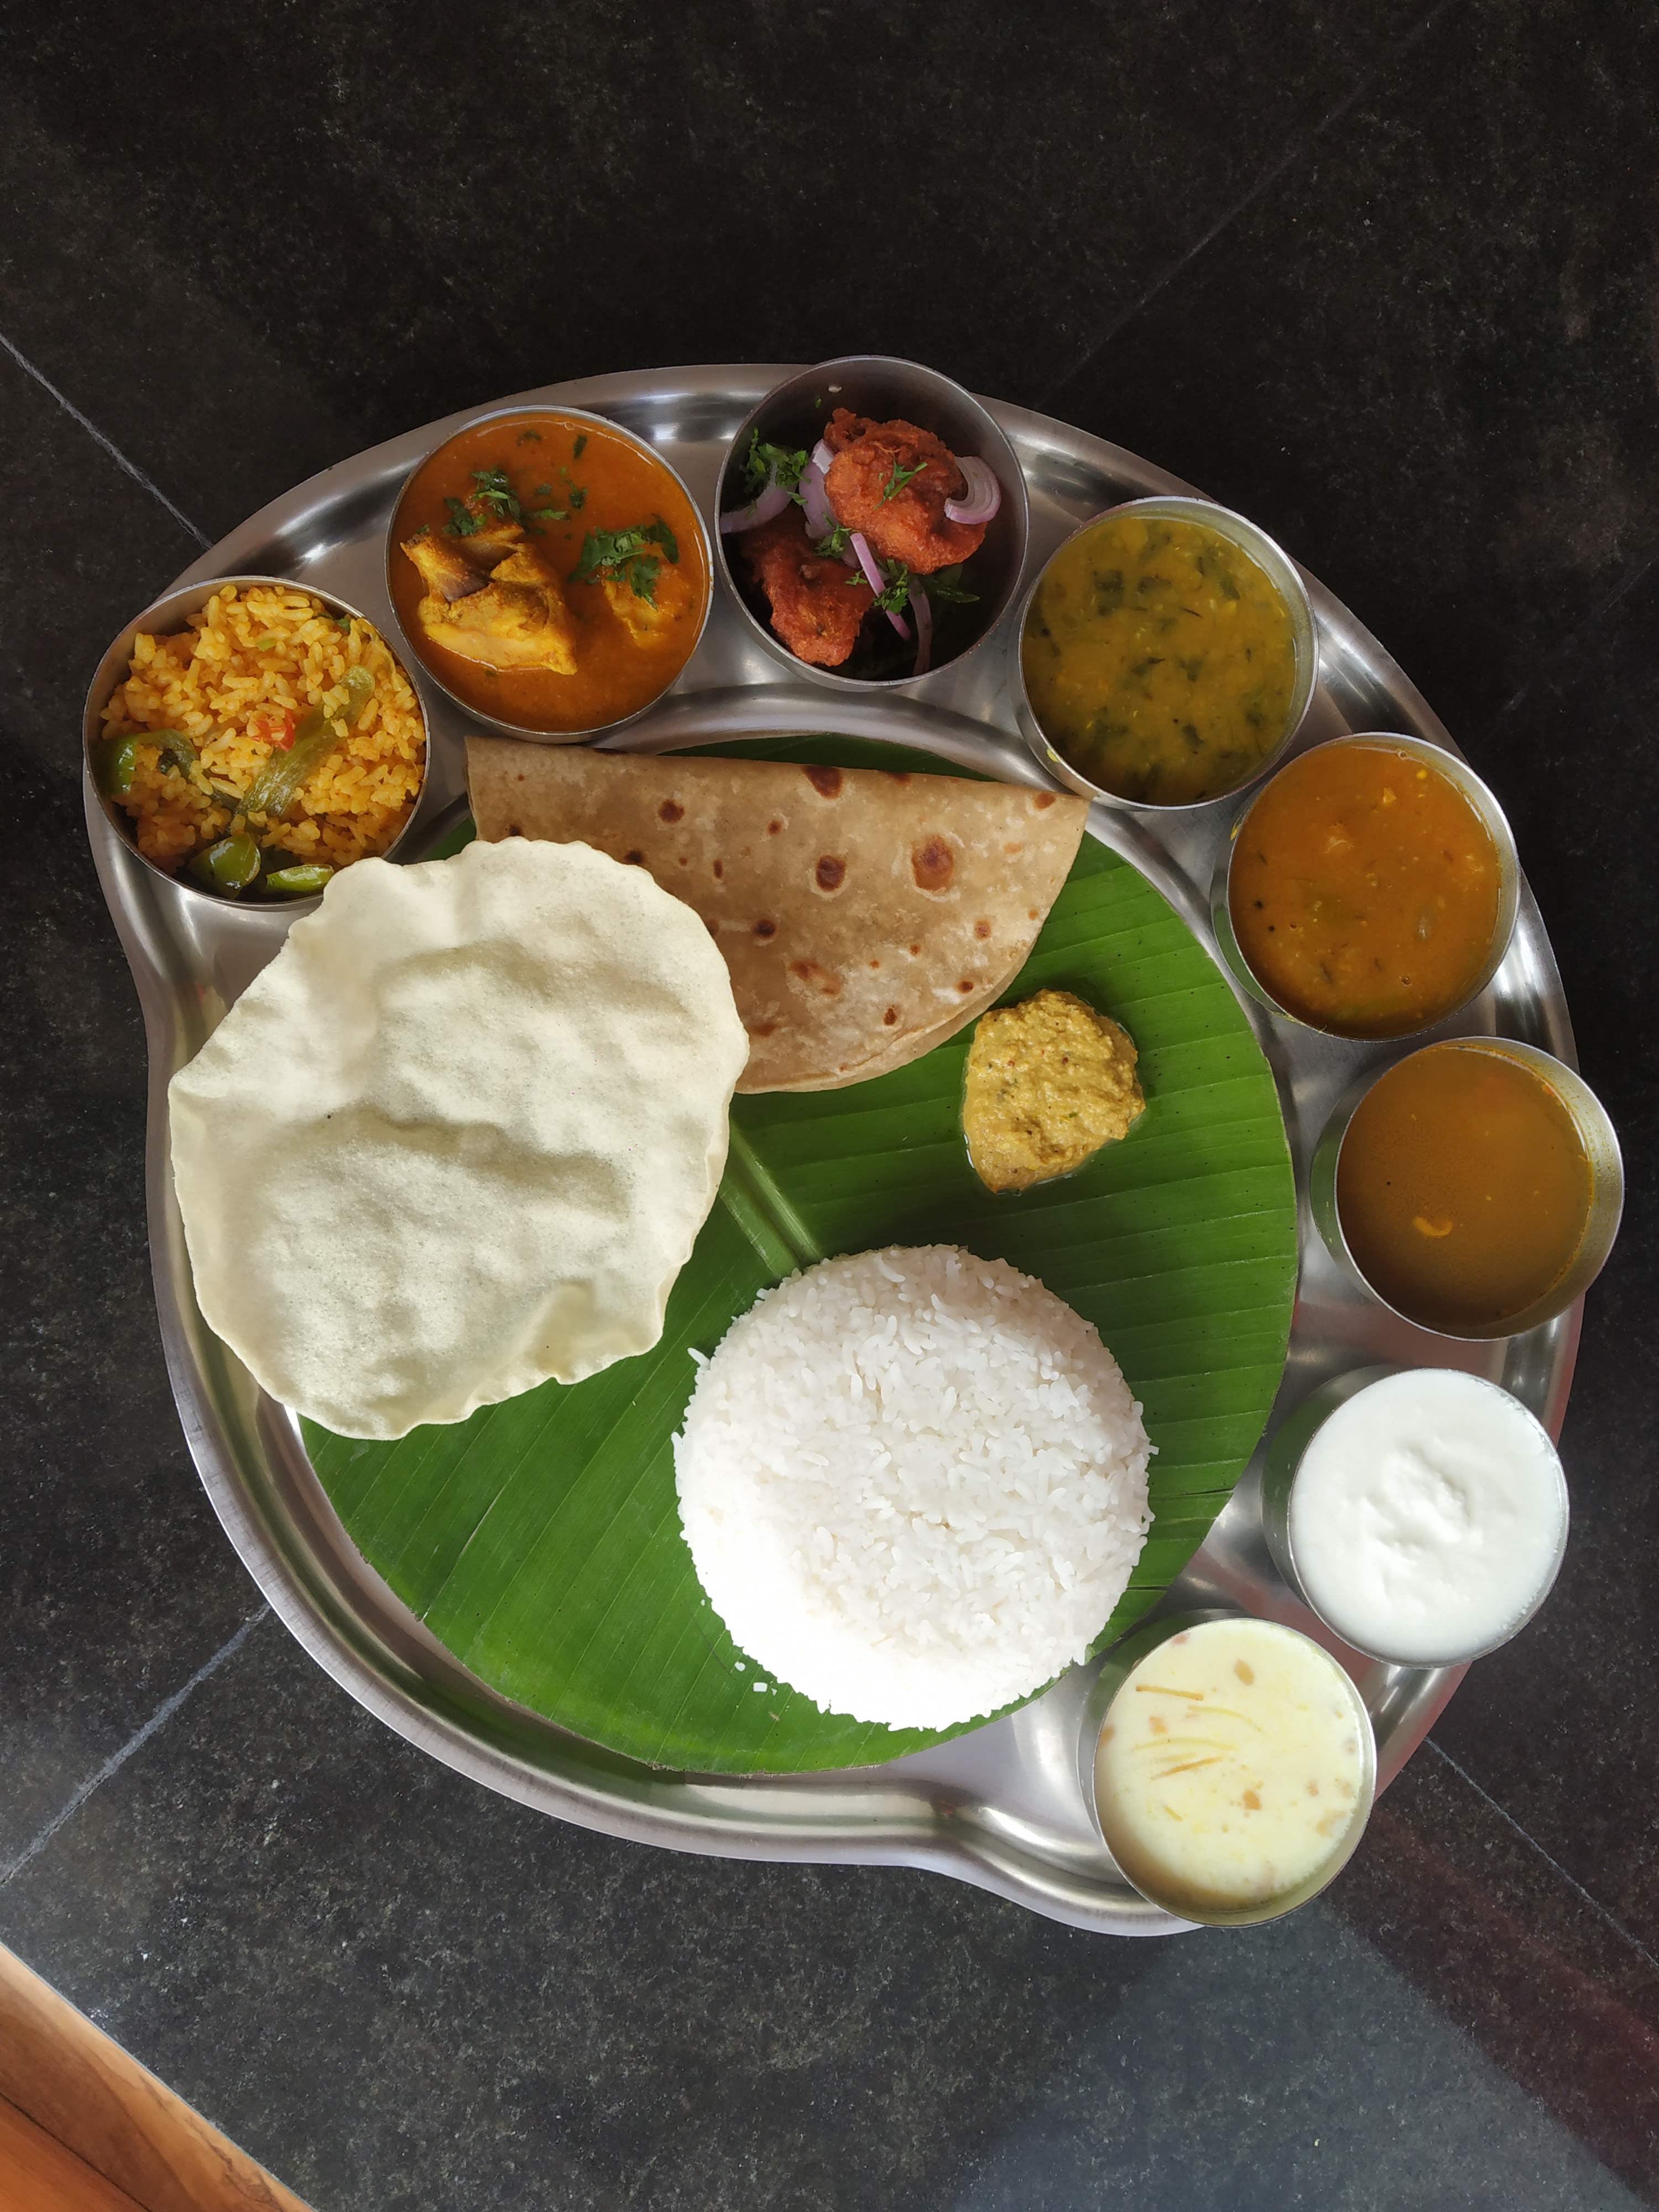 Dish,Food,Cuisine,Meal,Ingredient,Idli,Vegetarian food,Breakfast,Indian cuisine,Andhra food